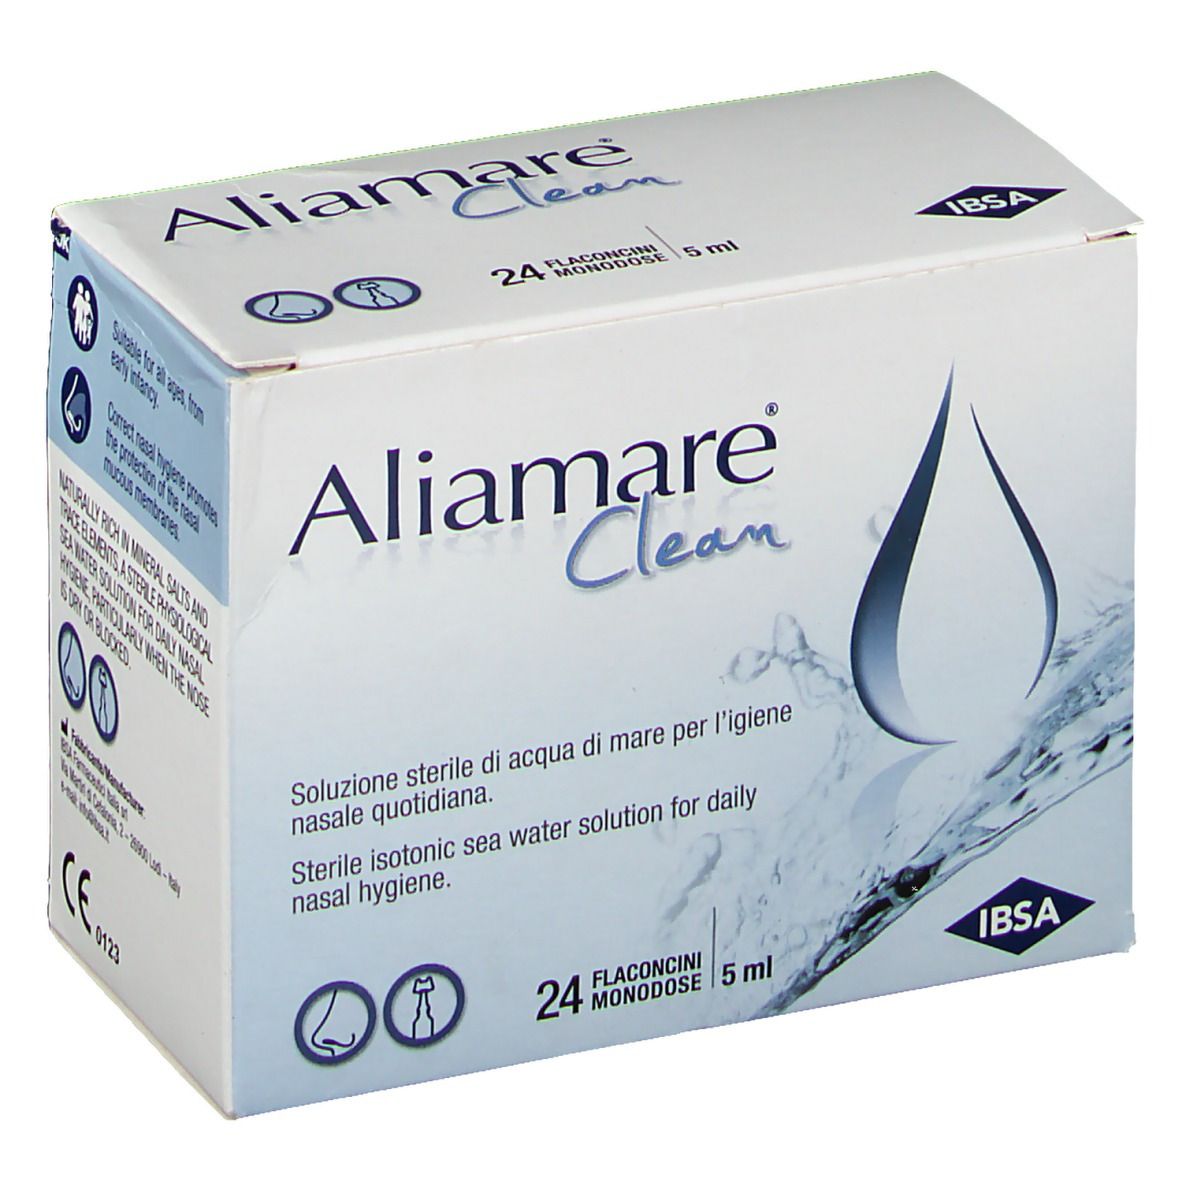 Aliamare® Clean